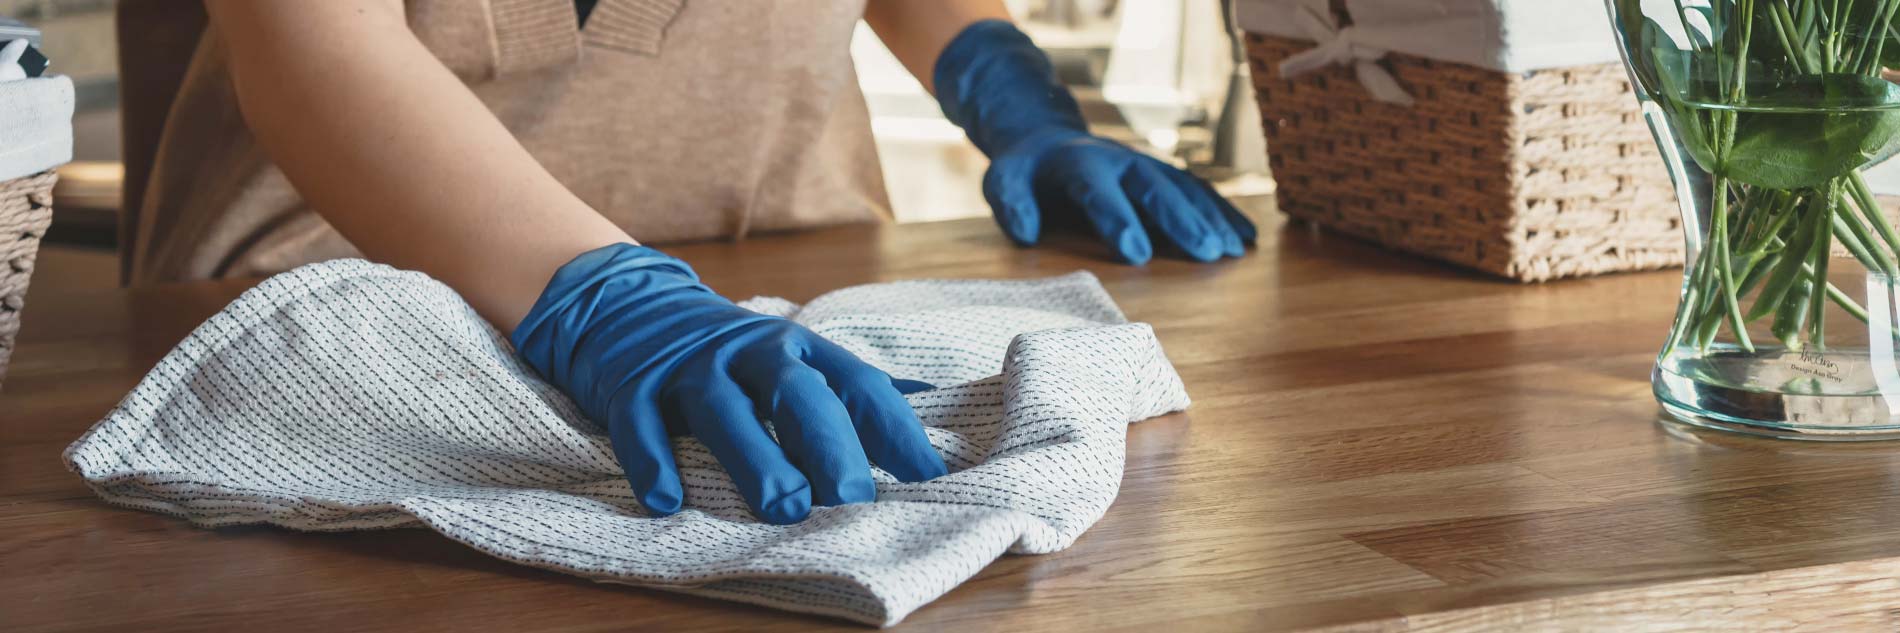 Photographie d'une main portant des gants de ménage et faisant la poussière sur un meuble en bois